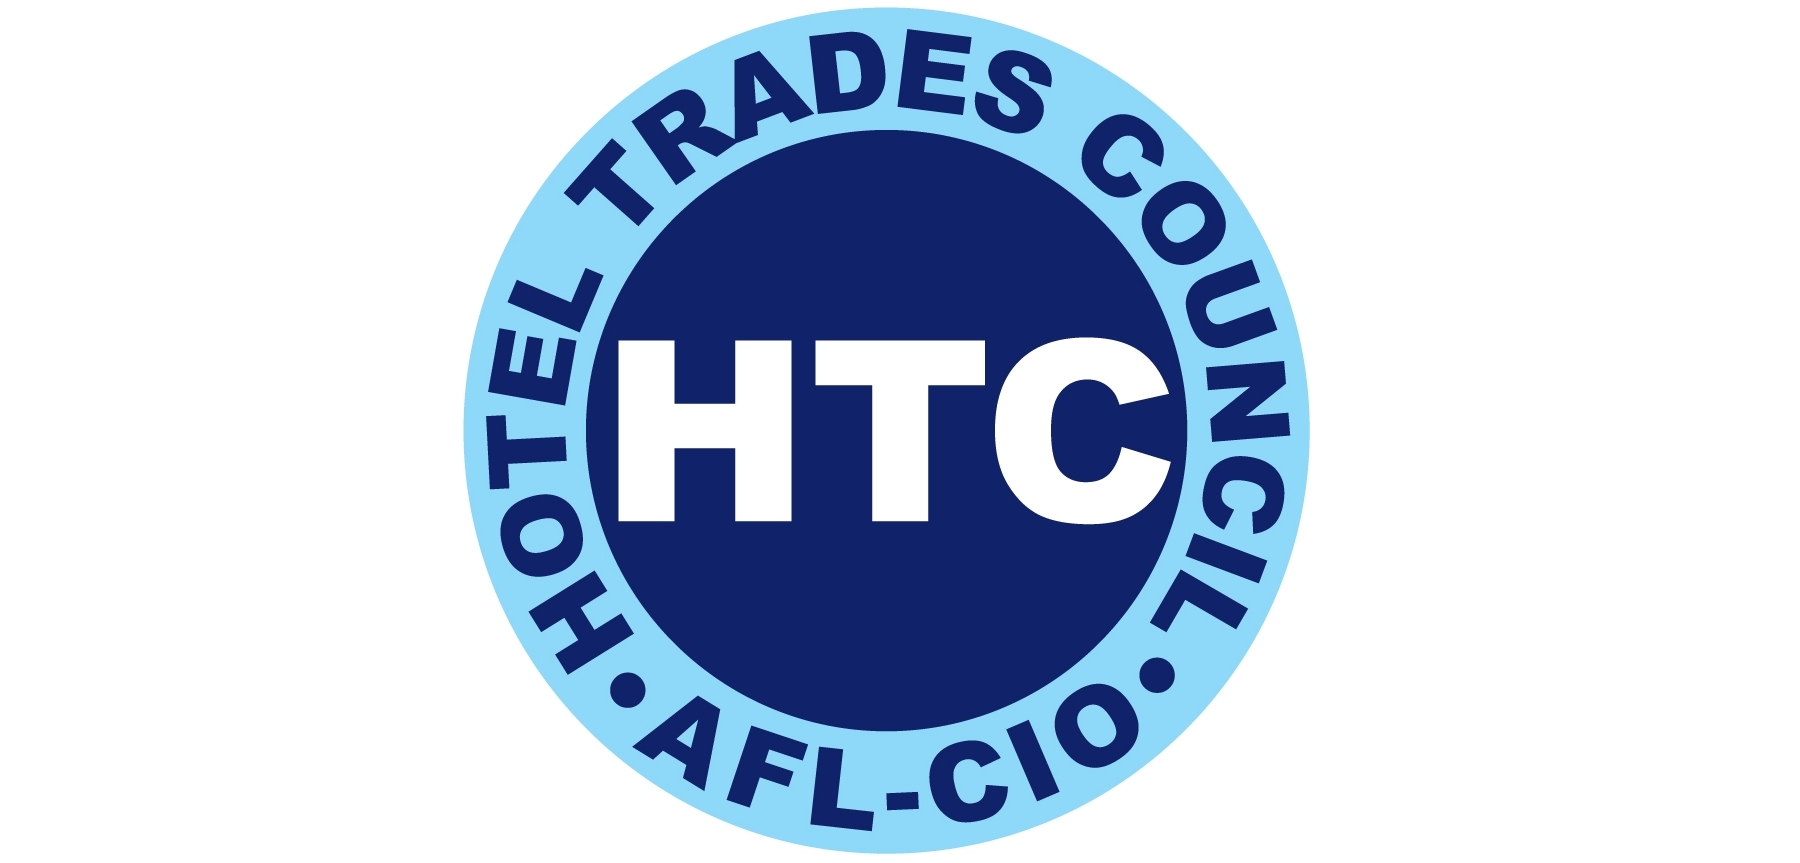 HTC Box Logo.jpg